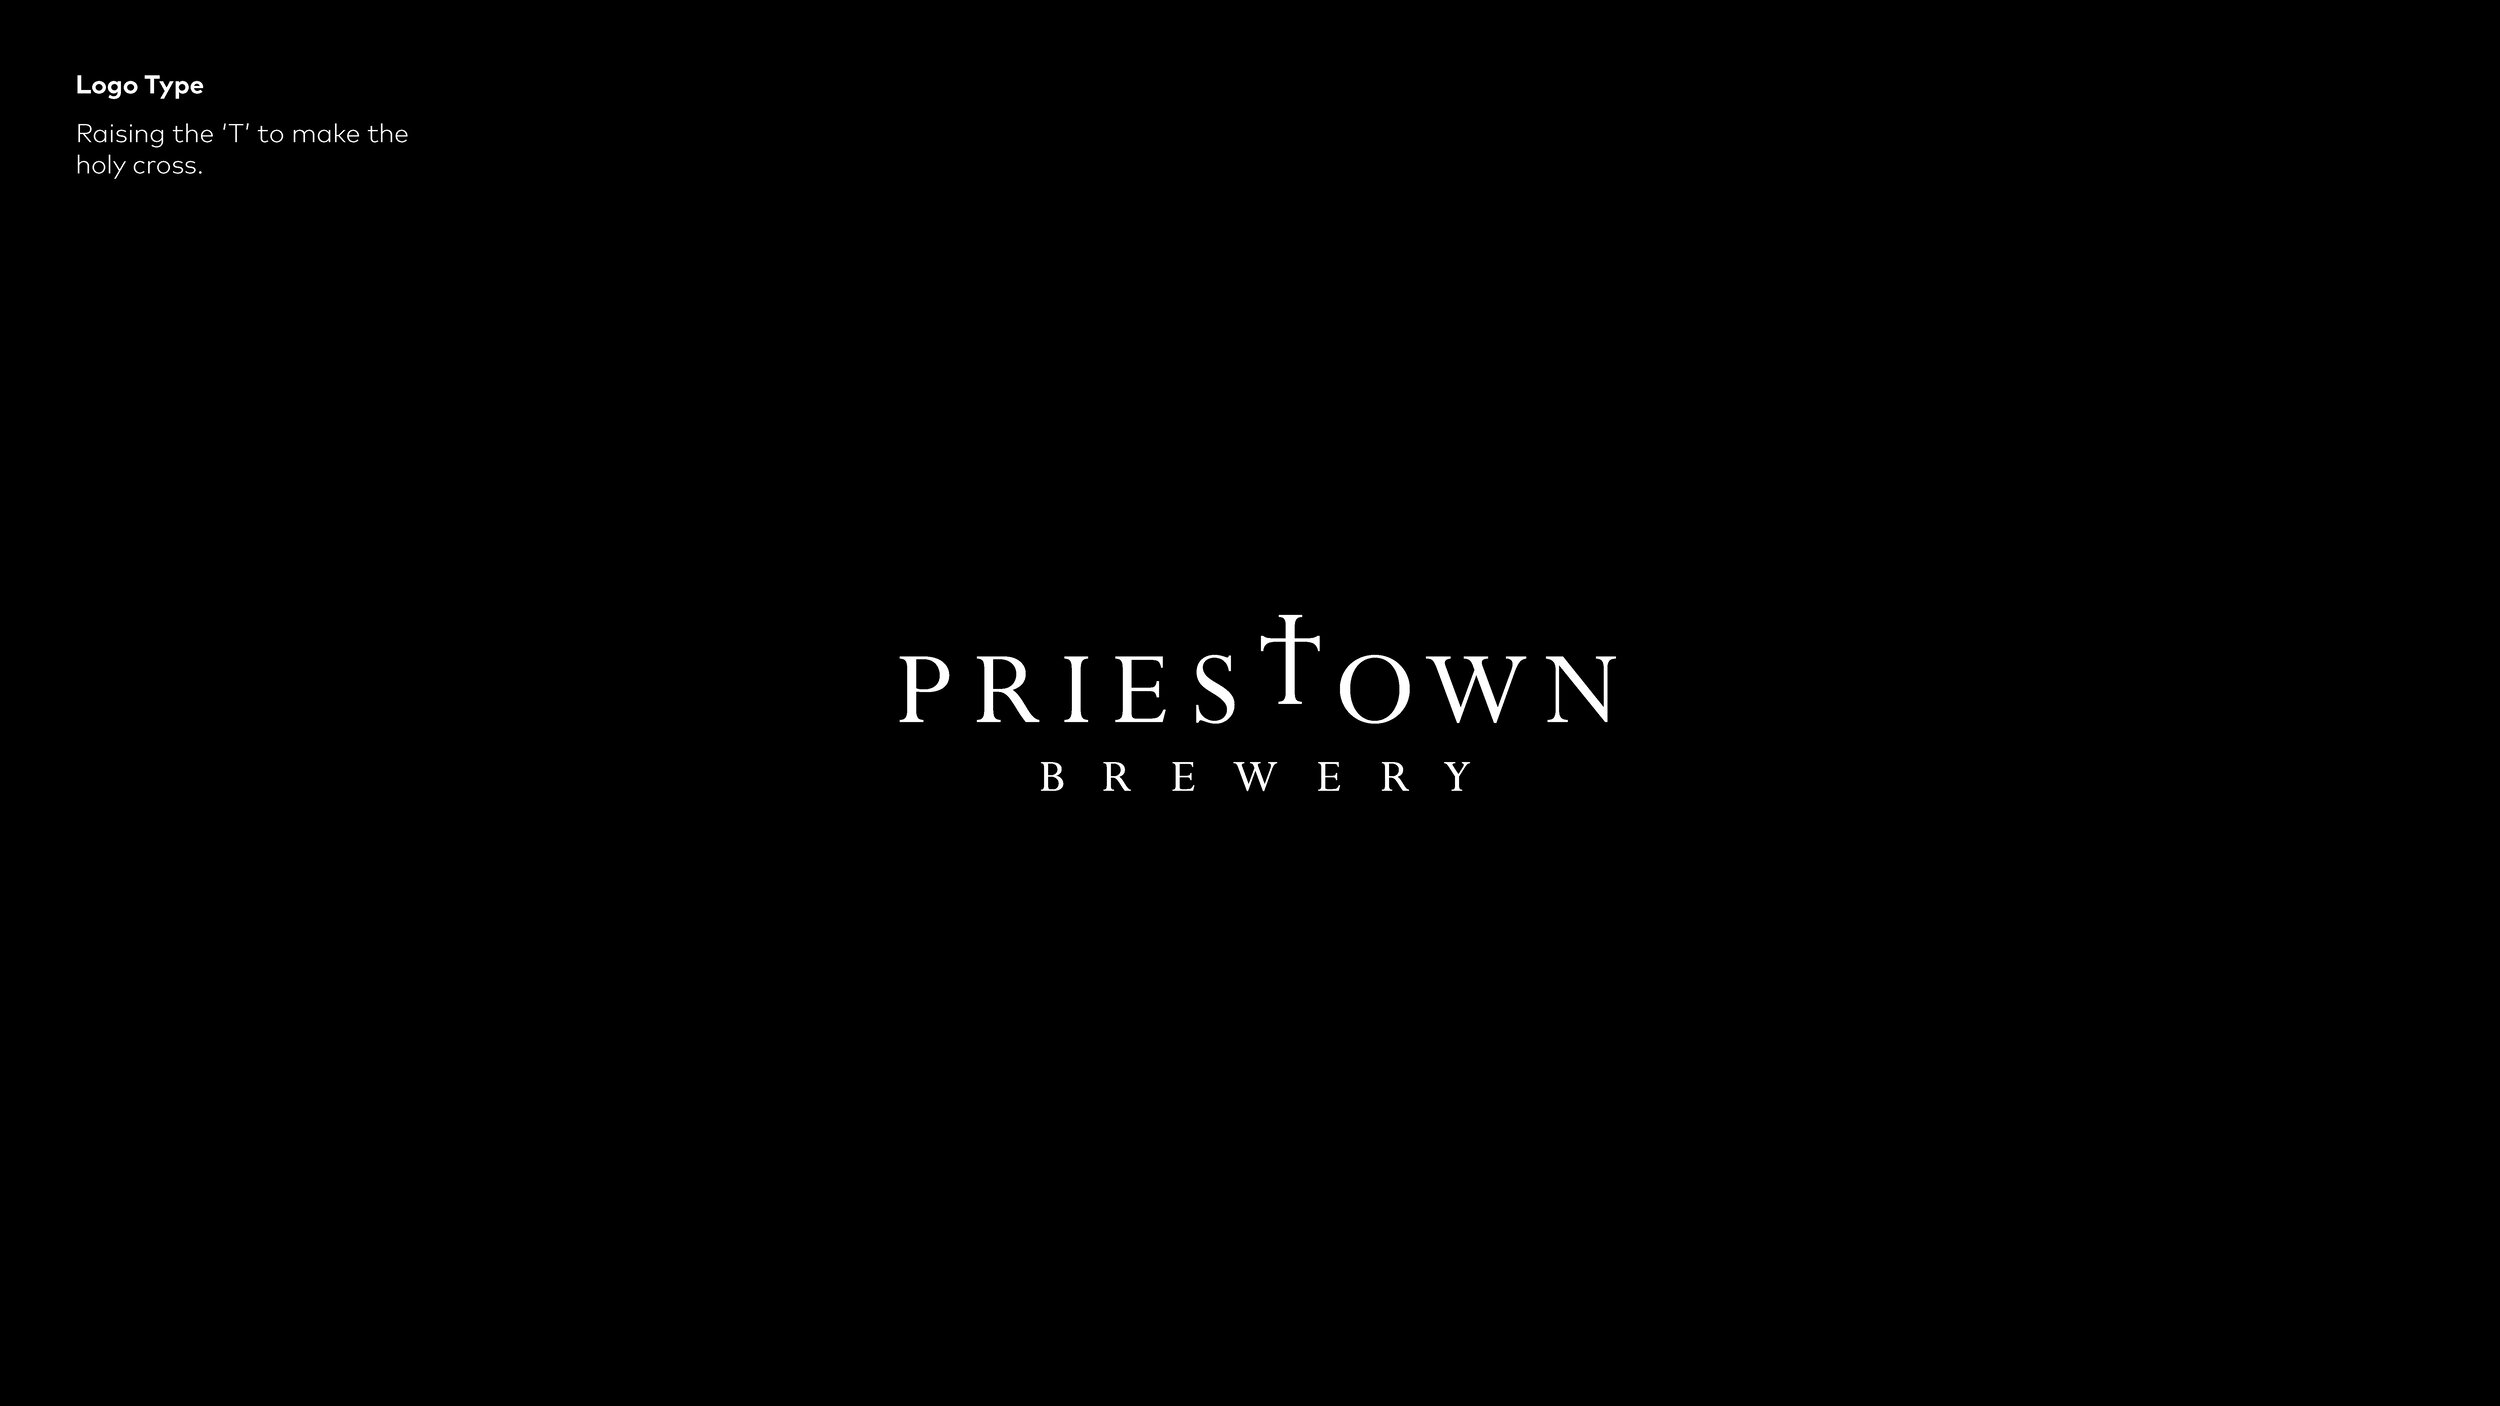 Priestown Brewery